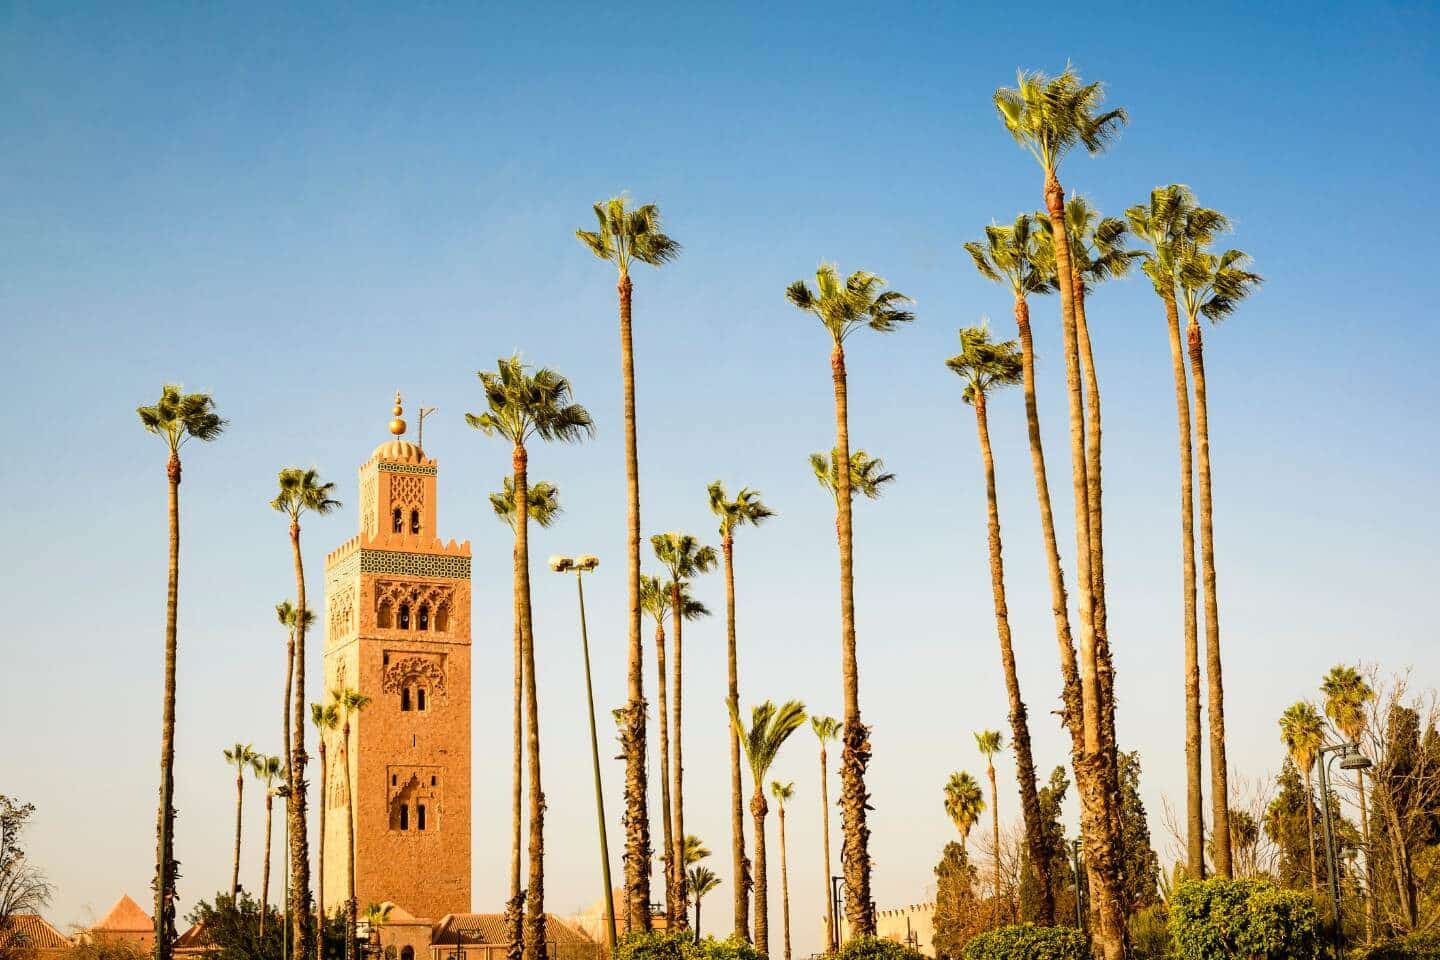 Marrakiesh city